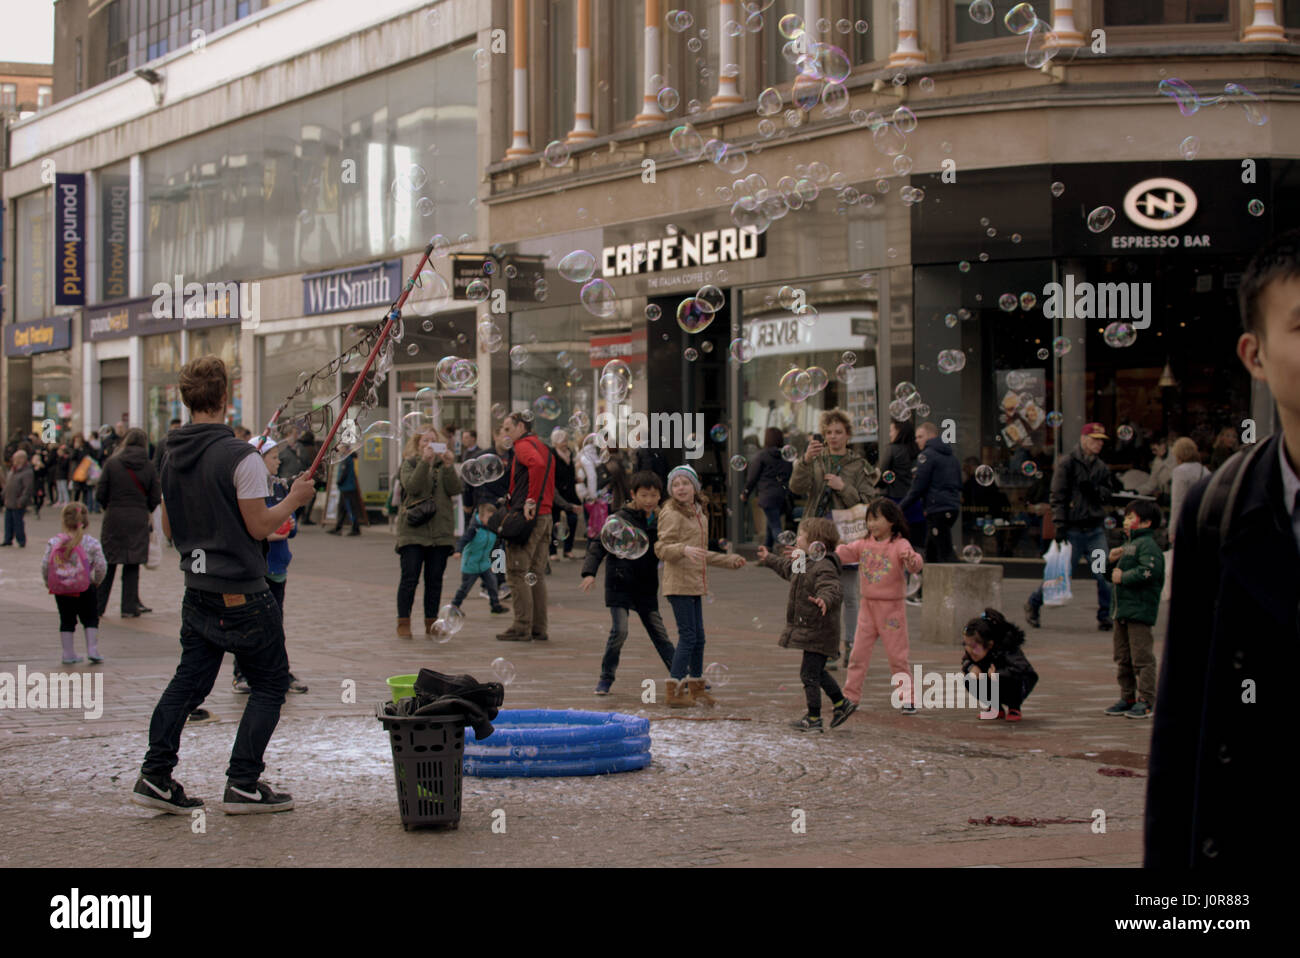 street entertainer blowing bubbles to entertain children on Argyle street Glasgow Scotland Stock Photo